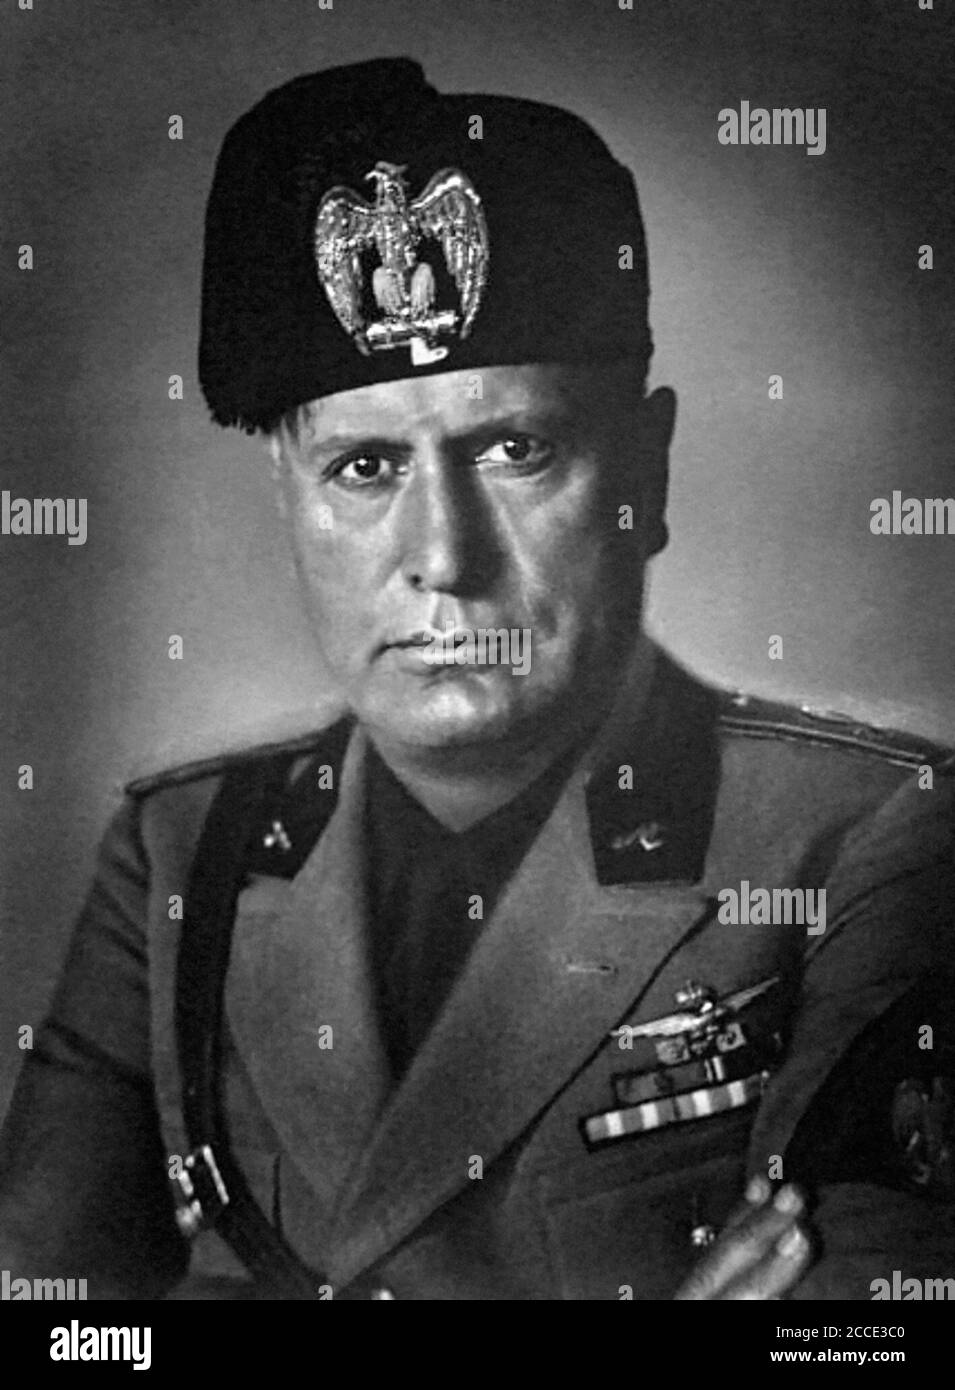 Benito Amilcare Andrea Mussolini (1883-1945), dittatore fascista italiano, in uniforme. Foto c.1930 Foto Stock